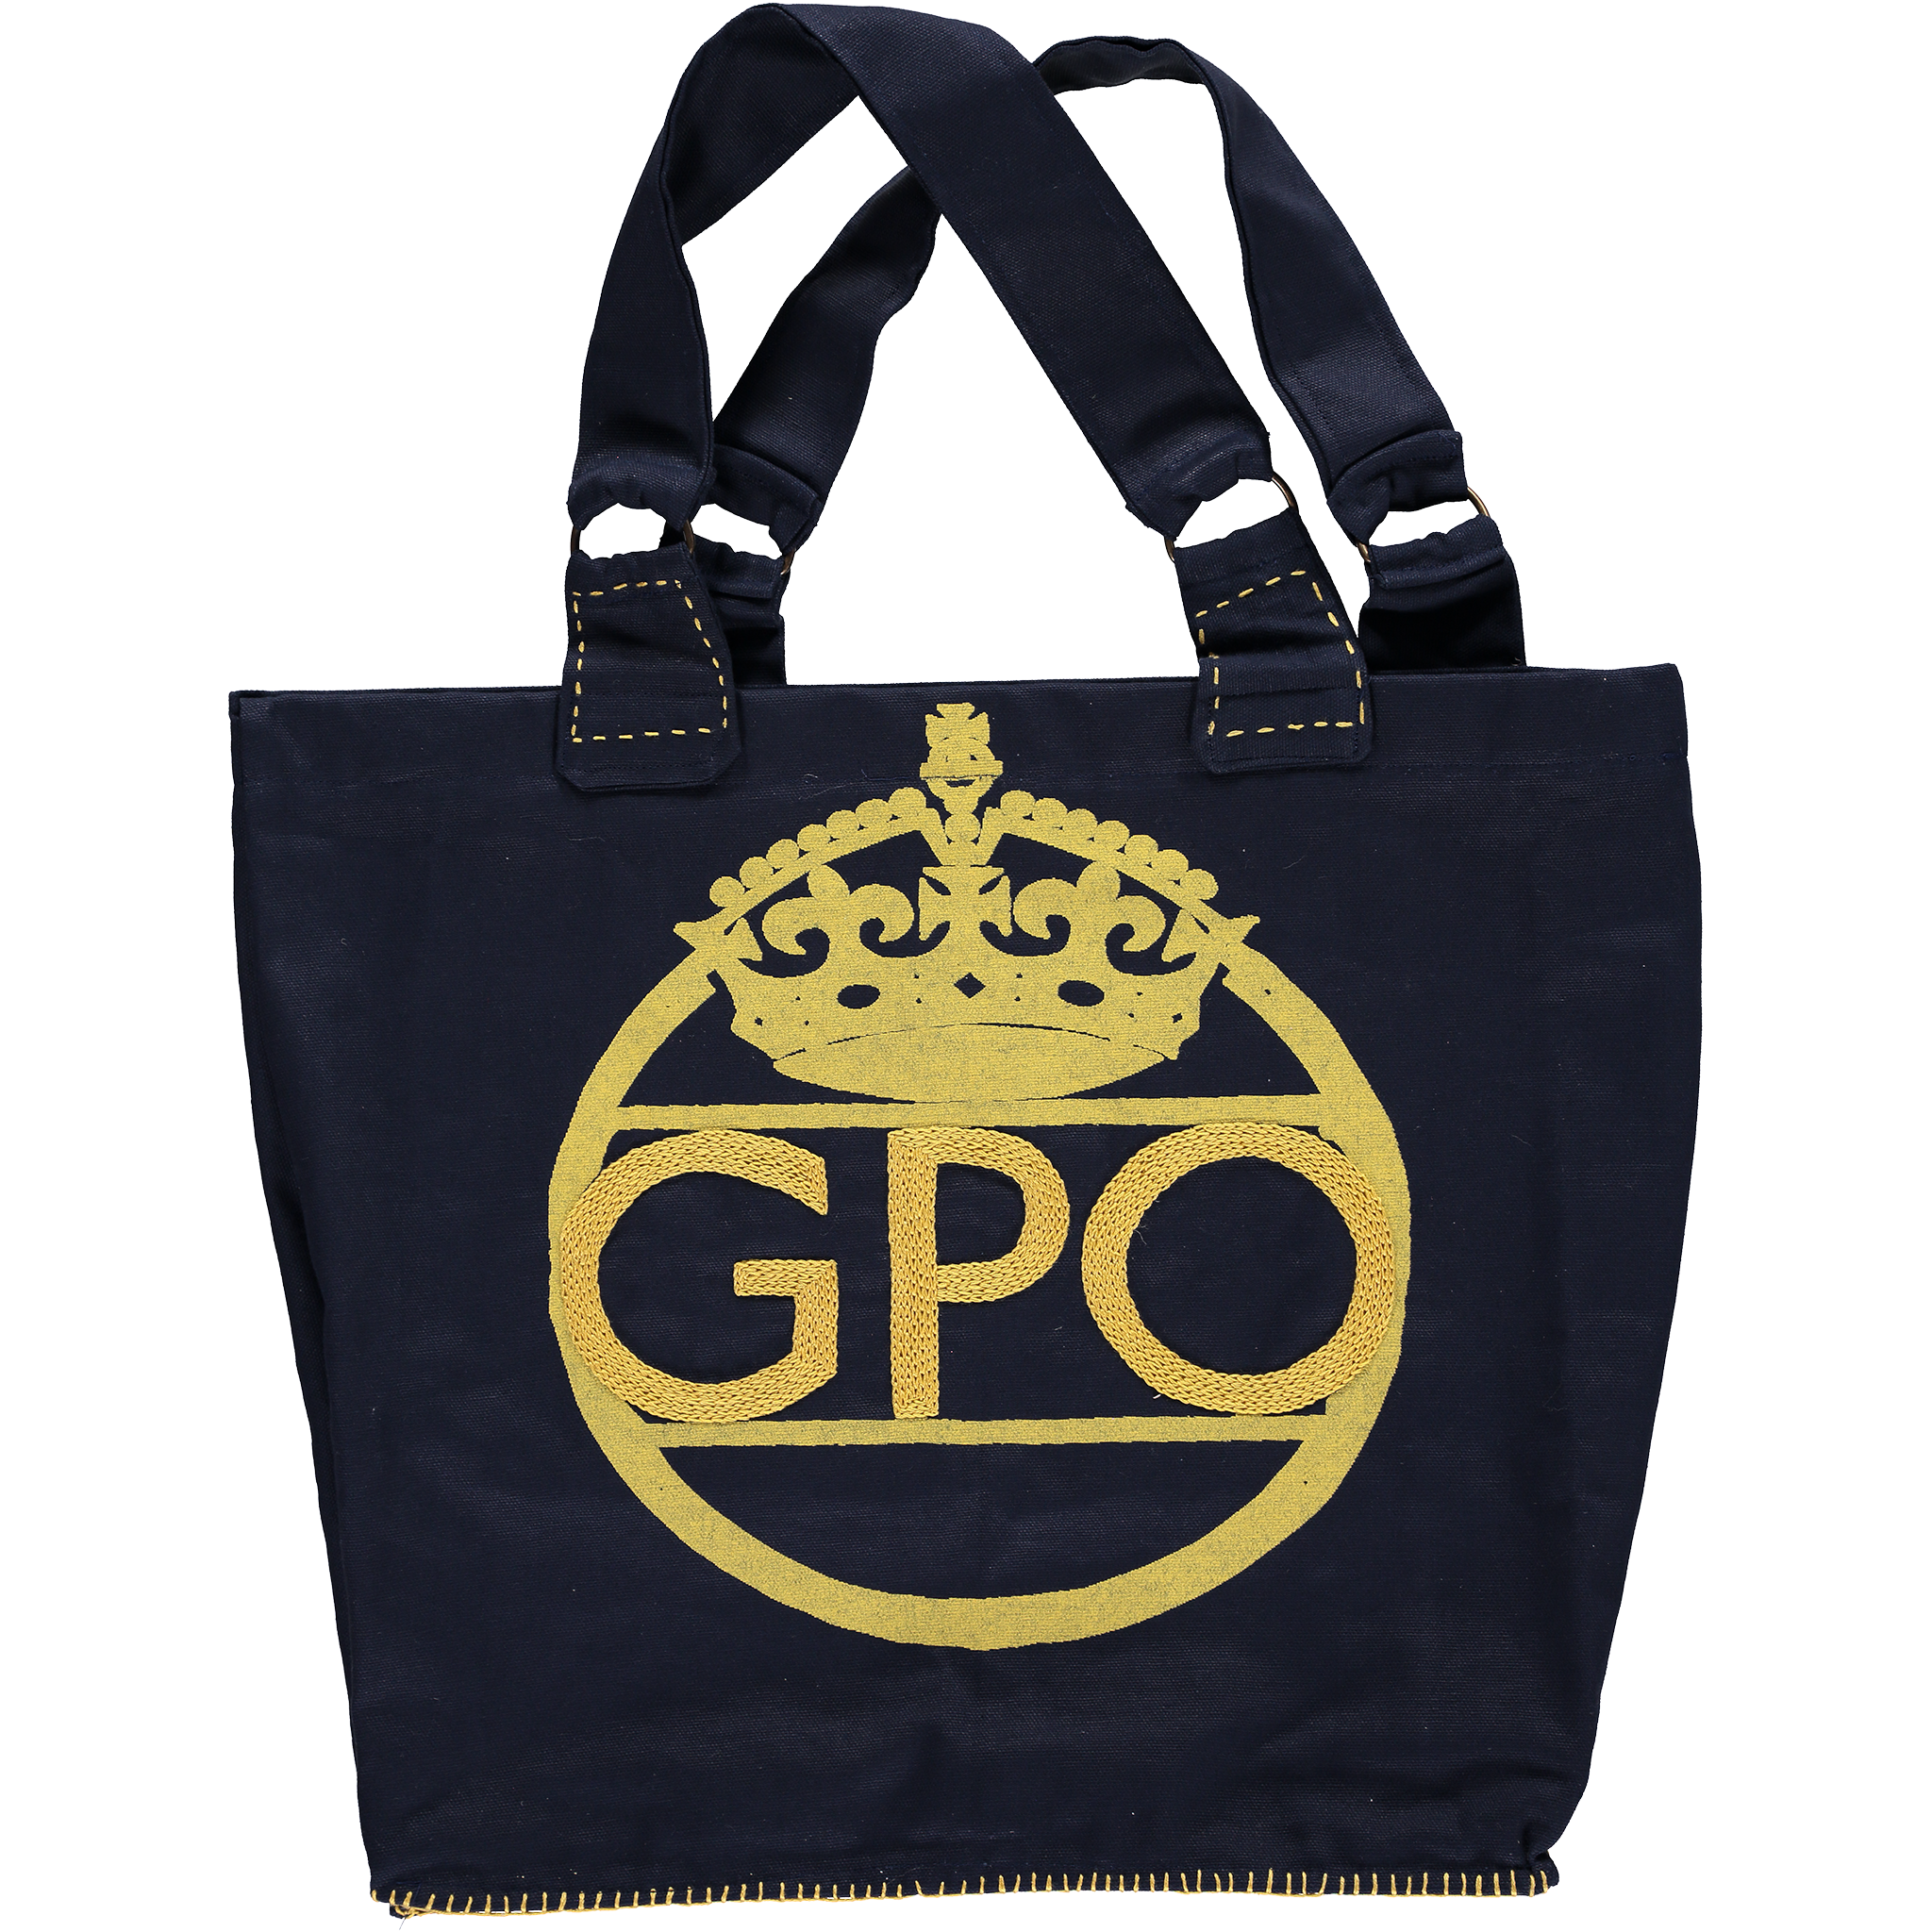 GPO Bag